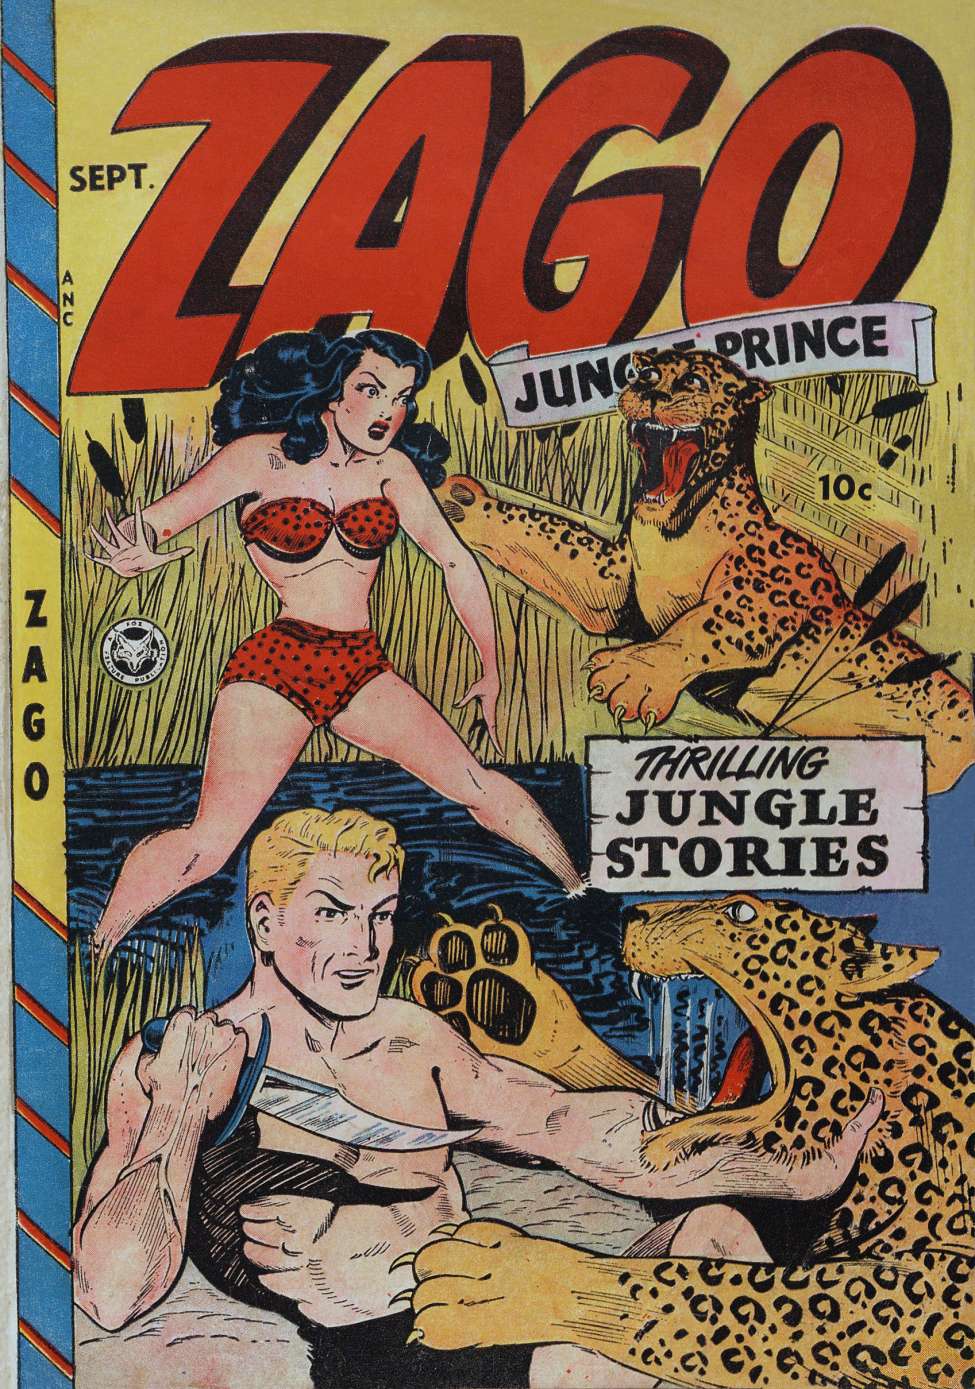 Book Cover For Zago, Jungle Prince 1